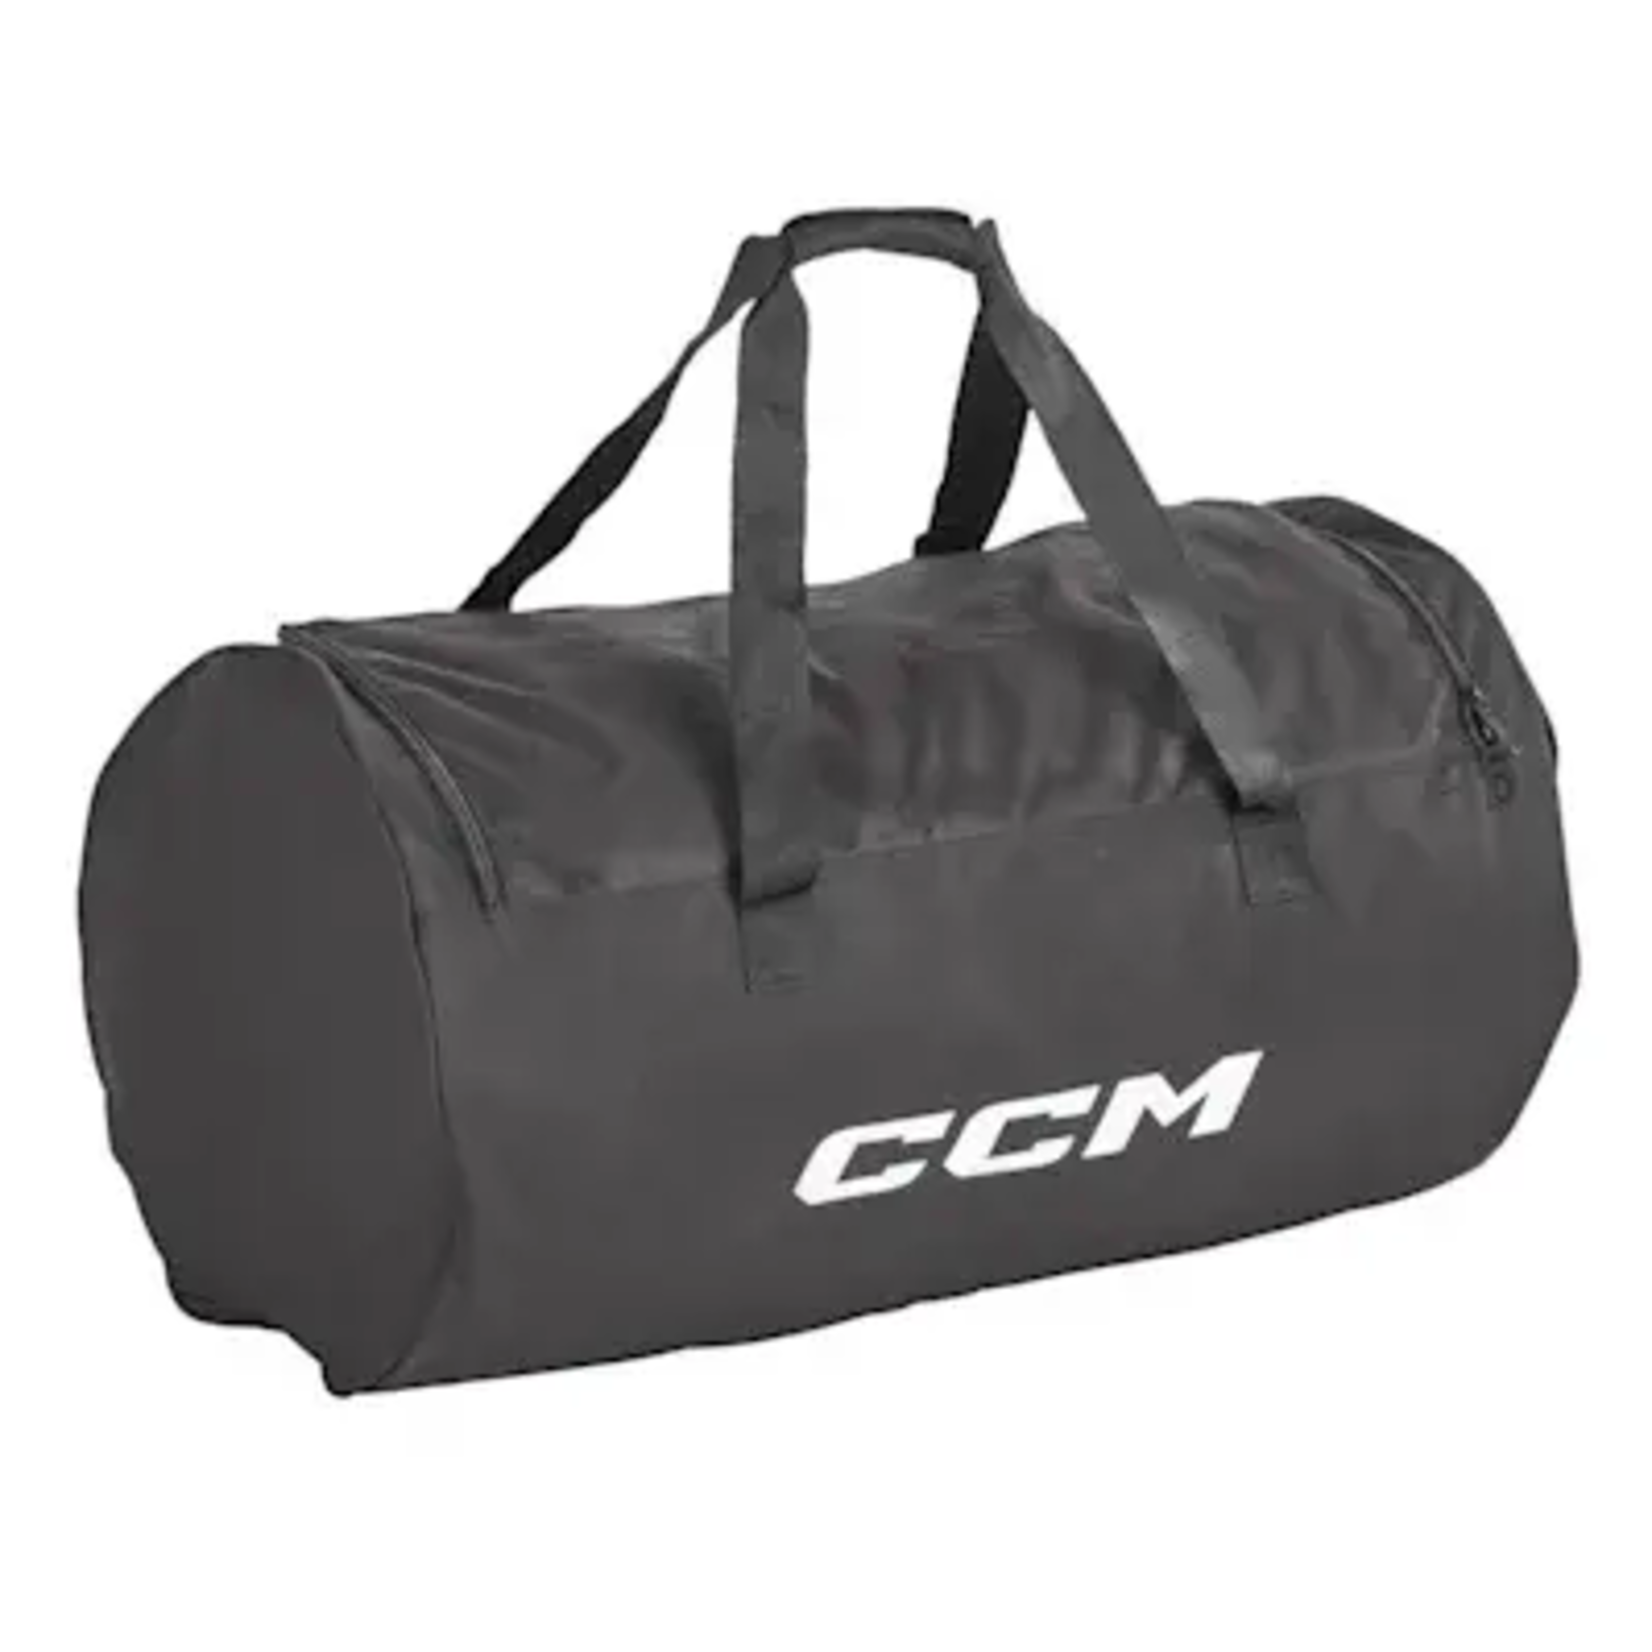 CCM CCM Hockey Bag, 410 Player Basic Carry, Junior, 32", Blk